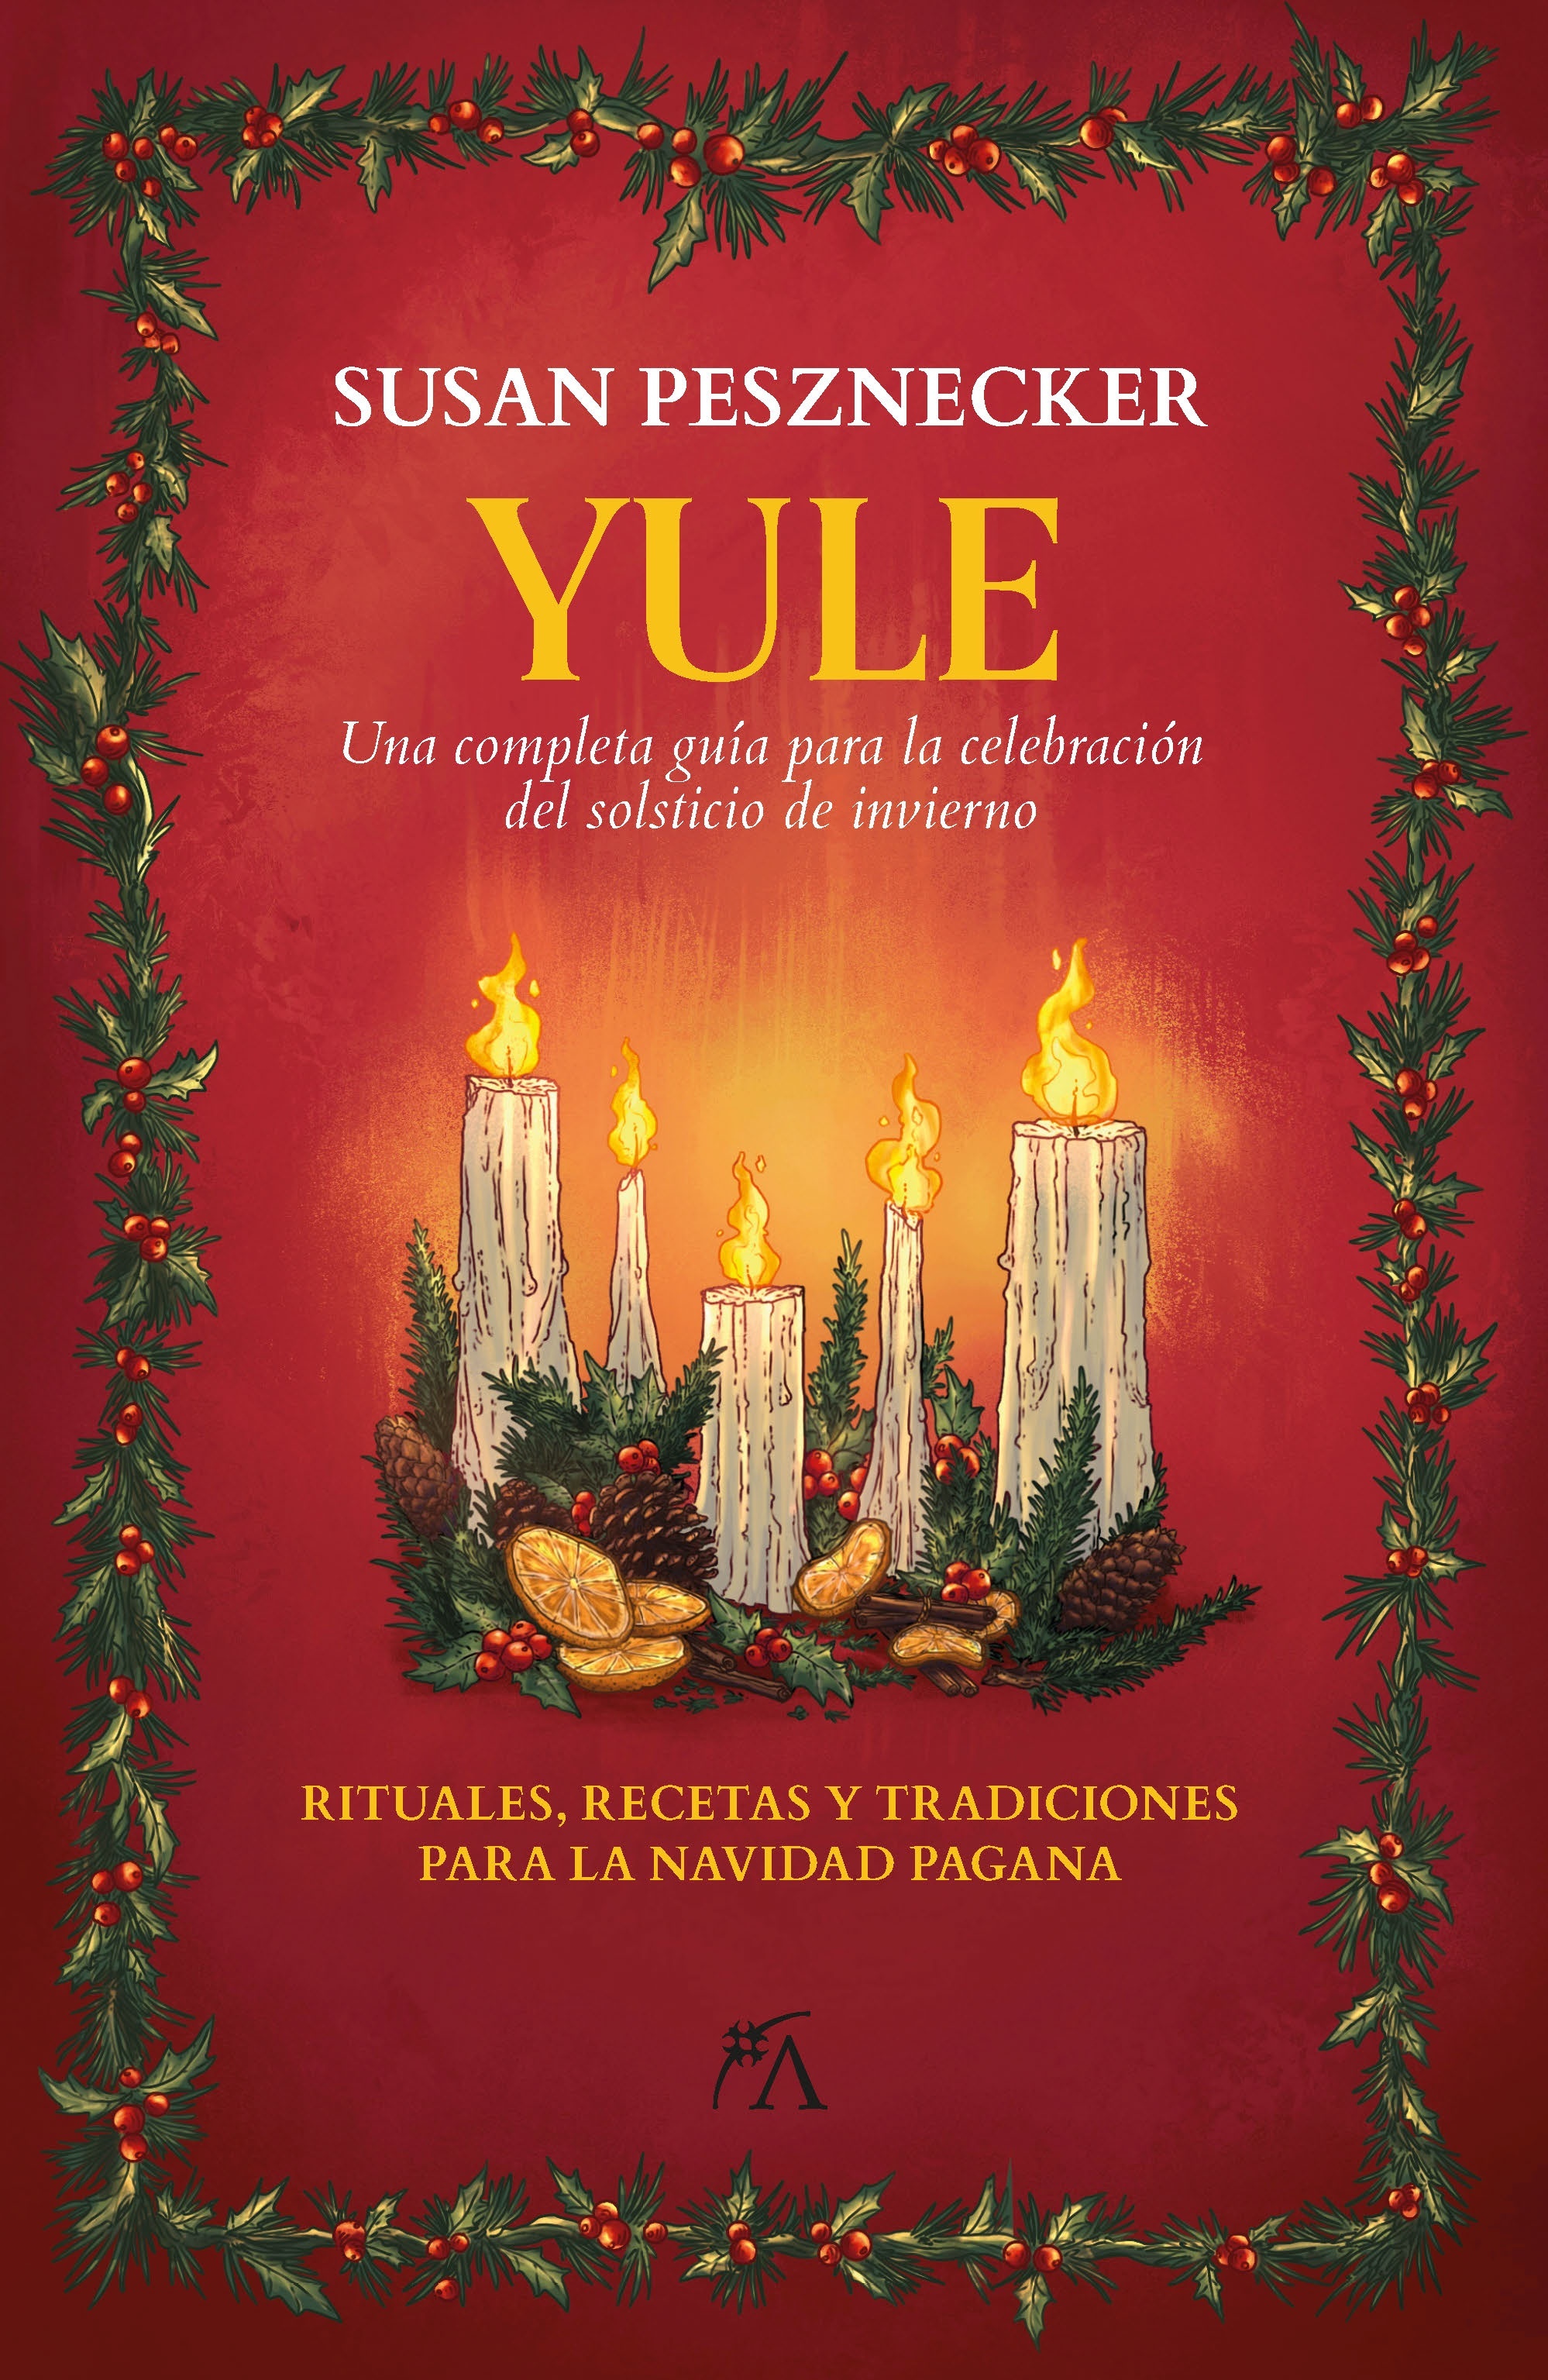 Yule "Una completa guía para la celebración del solsticio de invierno"